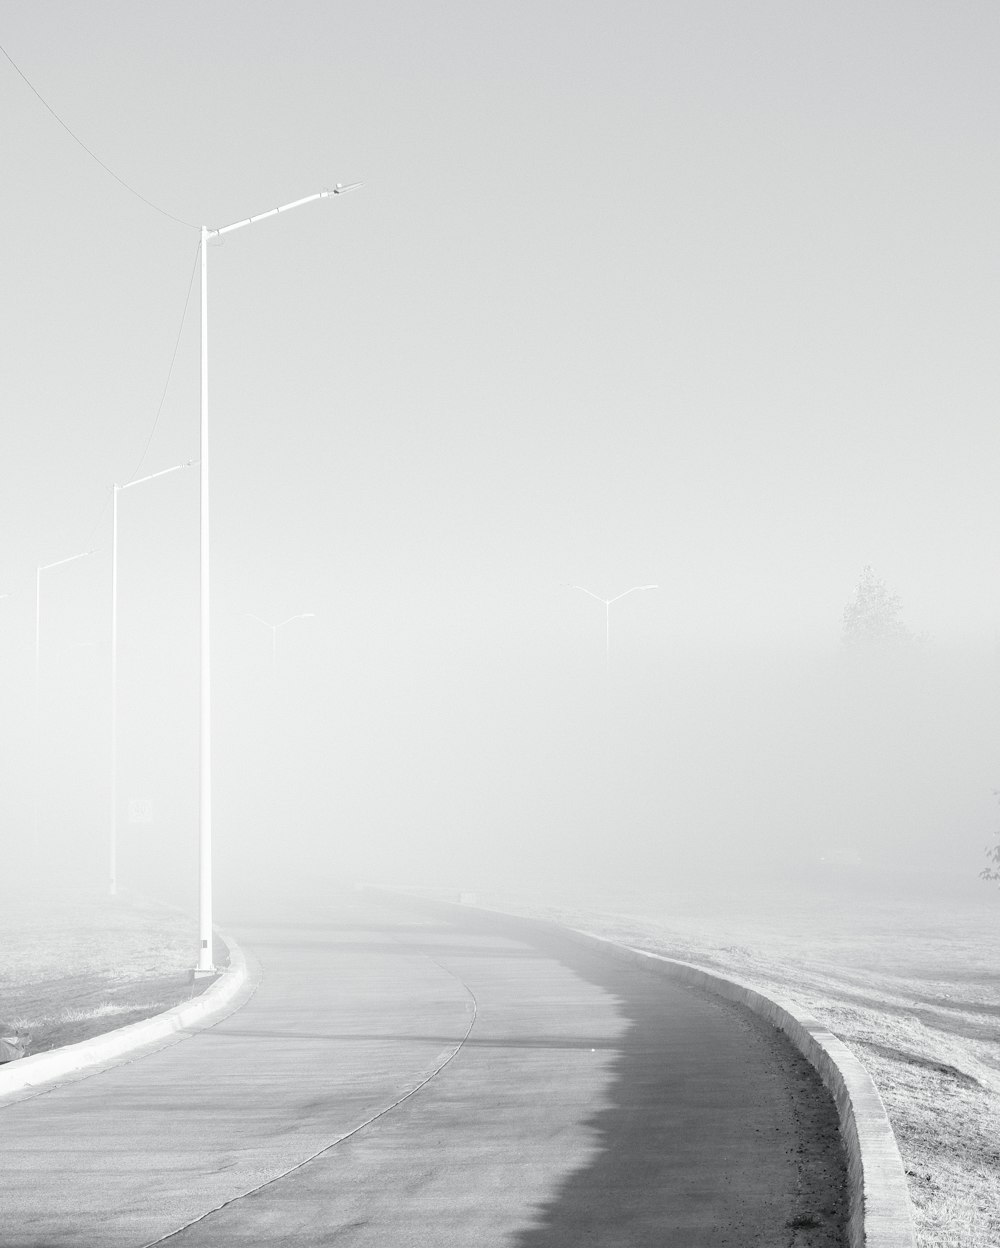 Una foto en blanco y negro de una carretera con niebla